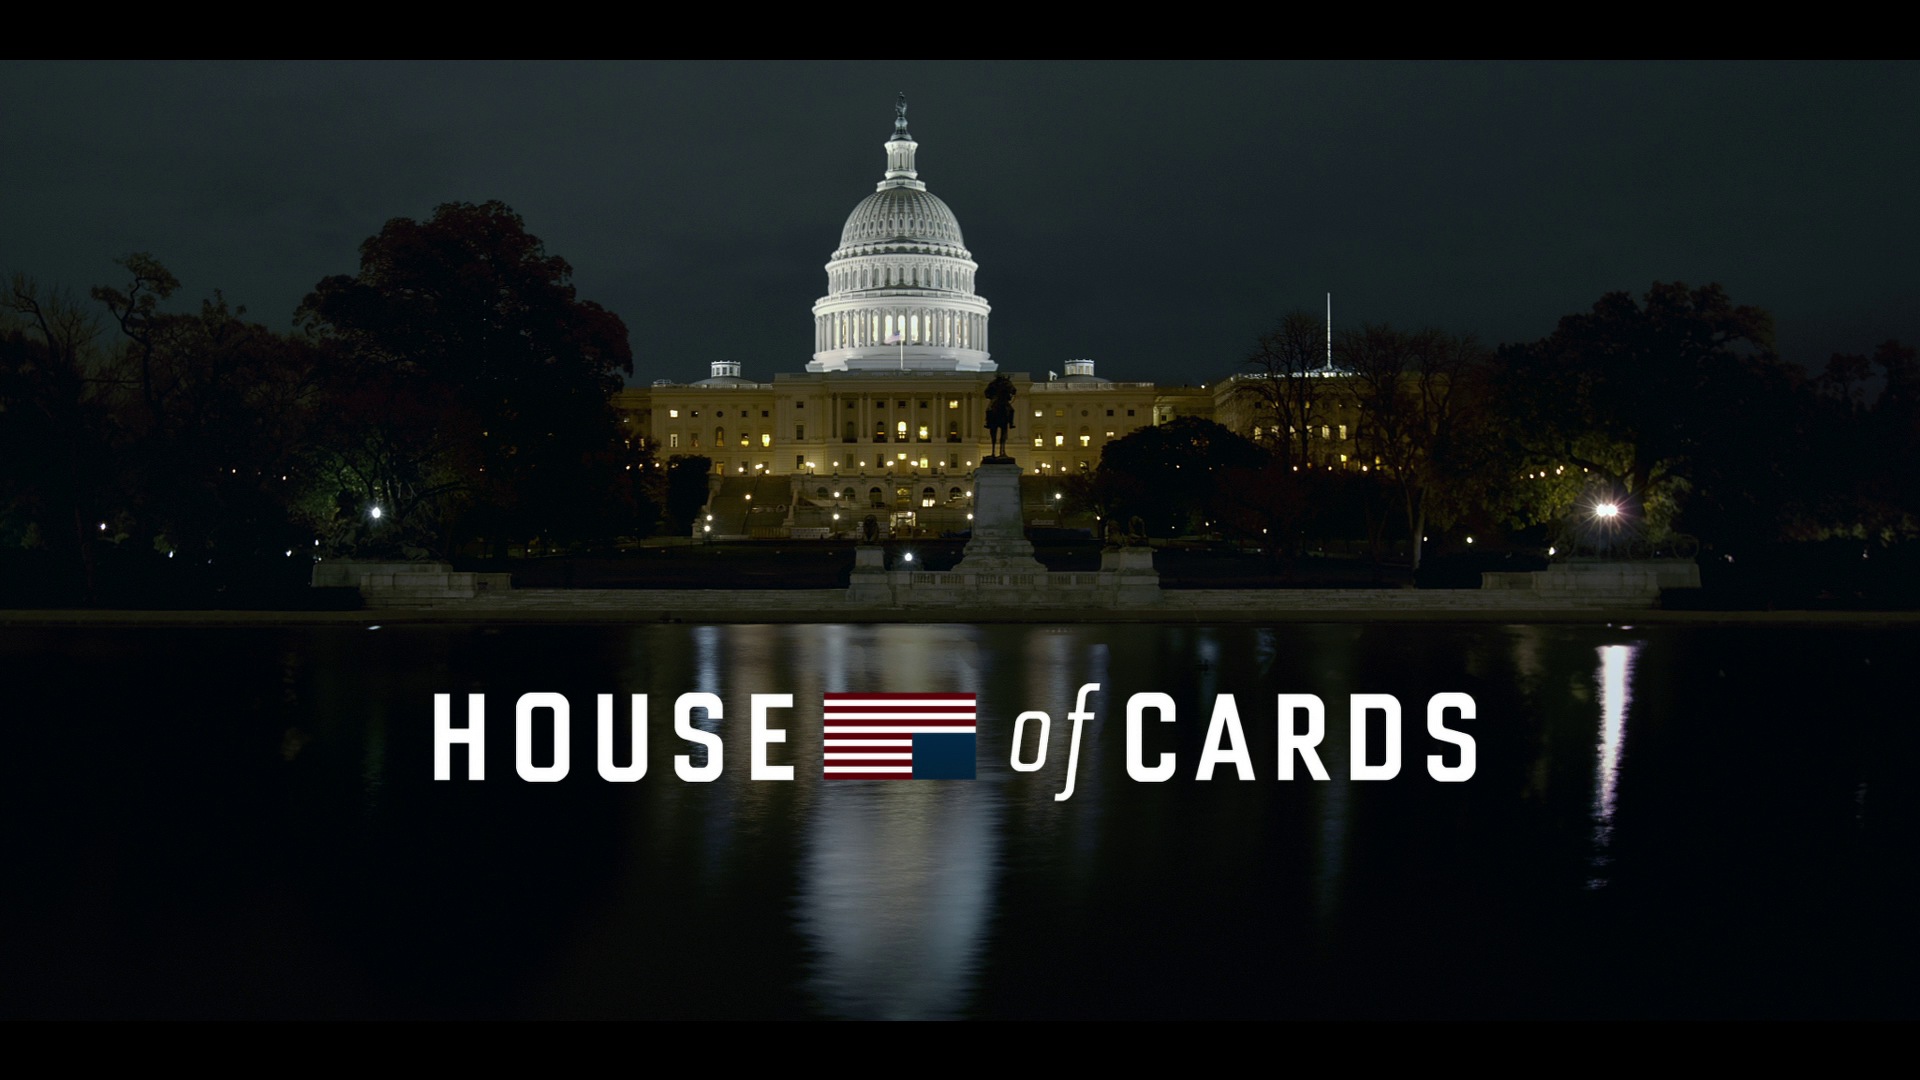 House of cards (de Netflix) cumplió 10 años